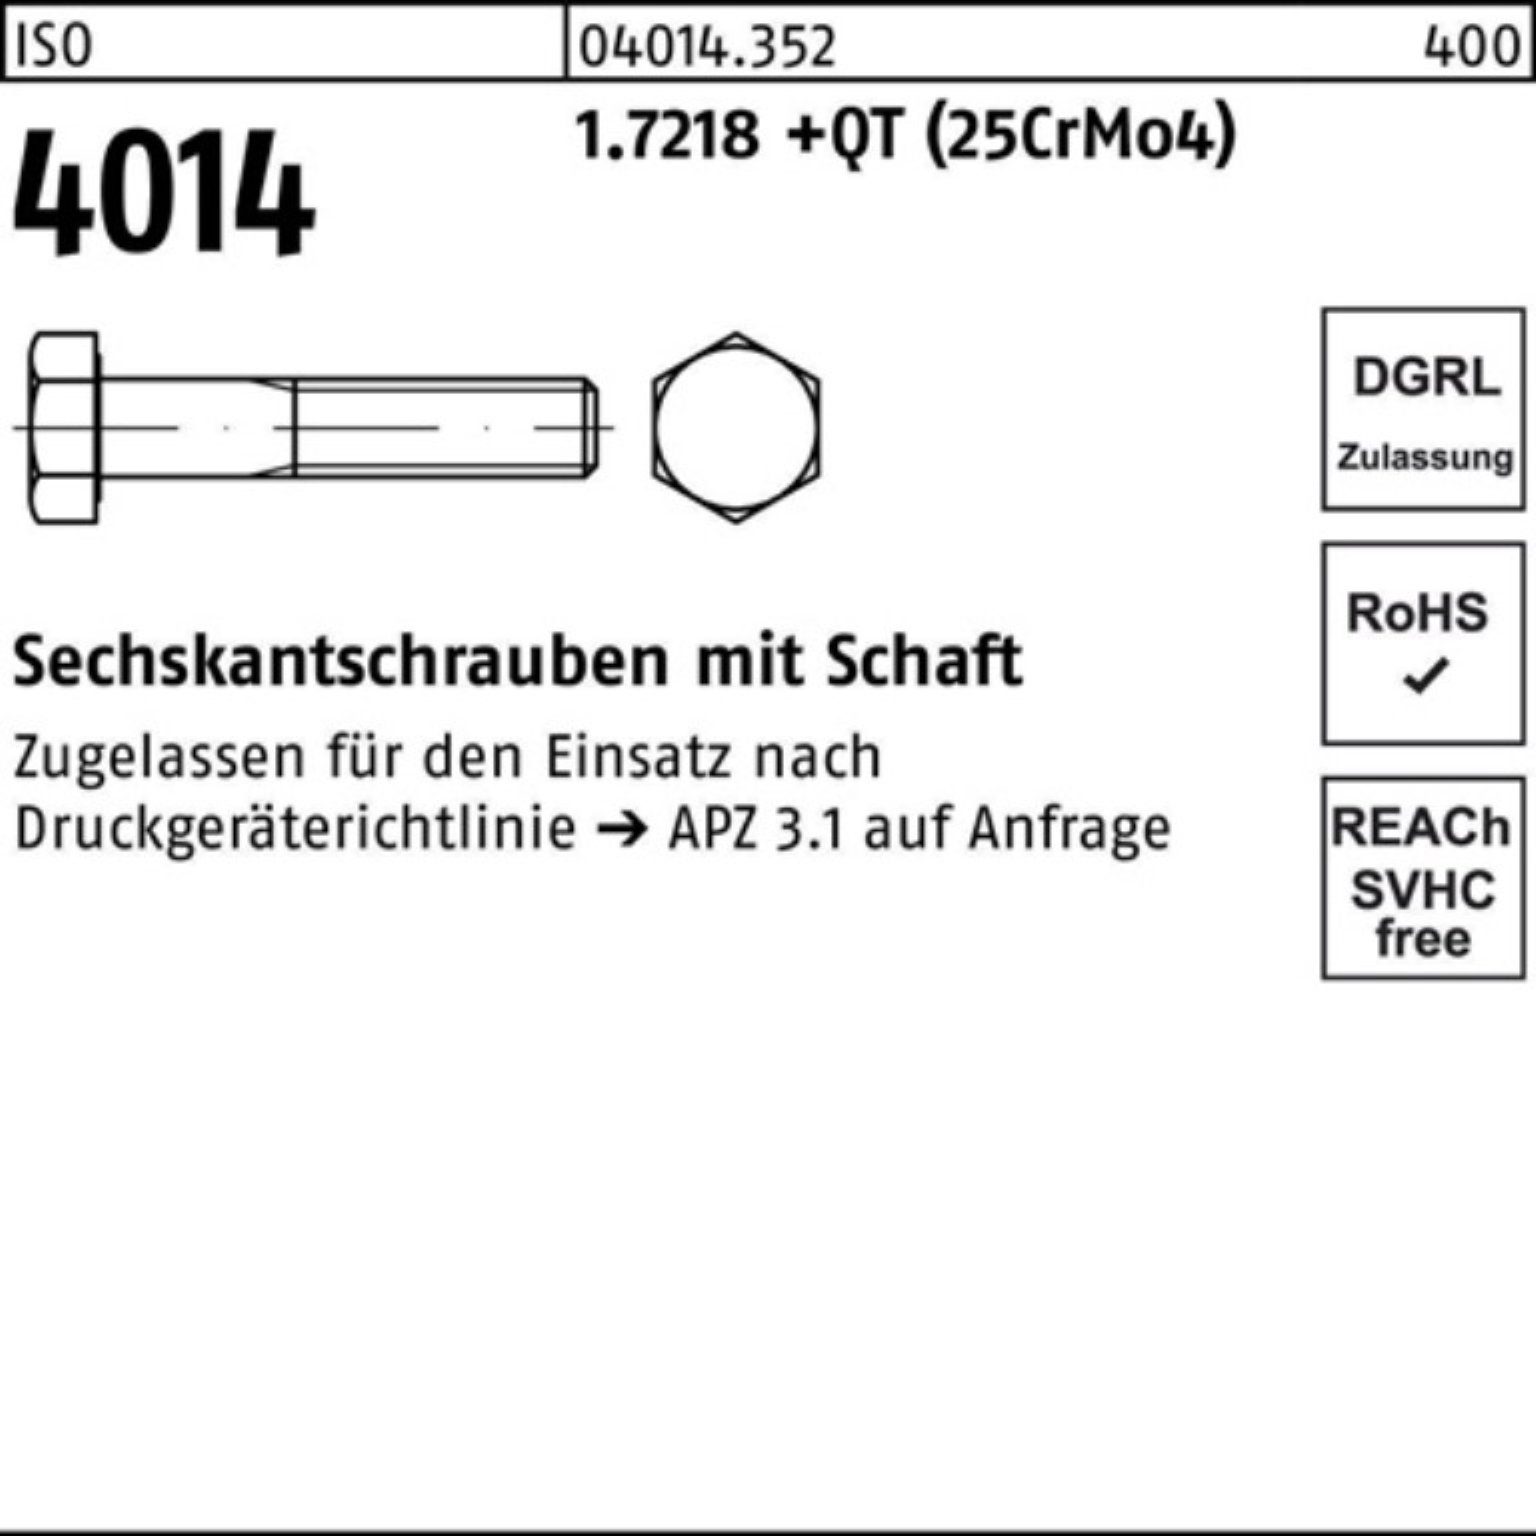 M16x 1.7218 100er ISO 4014 Schaft Bufab (25Cr 140 Pack Sechskantschraube Sechskantschraube +QT